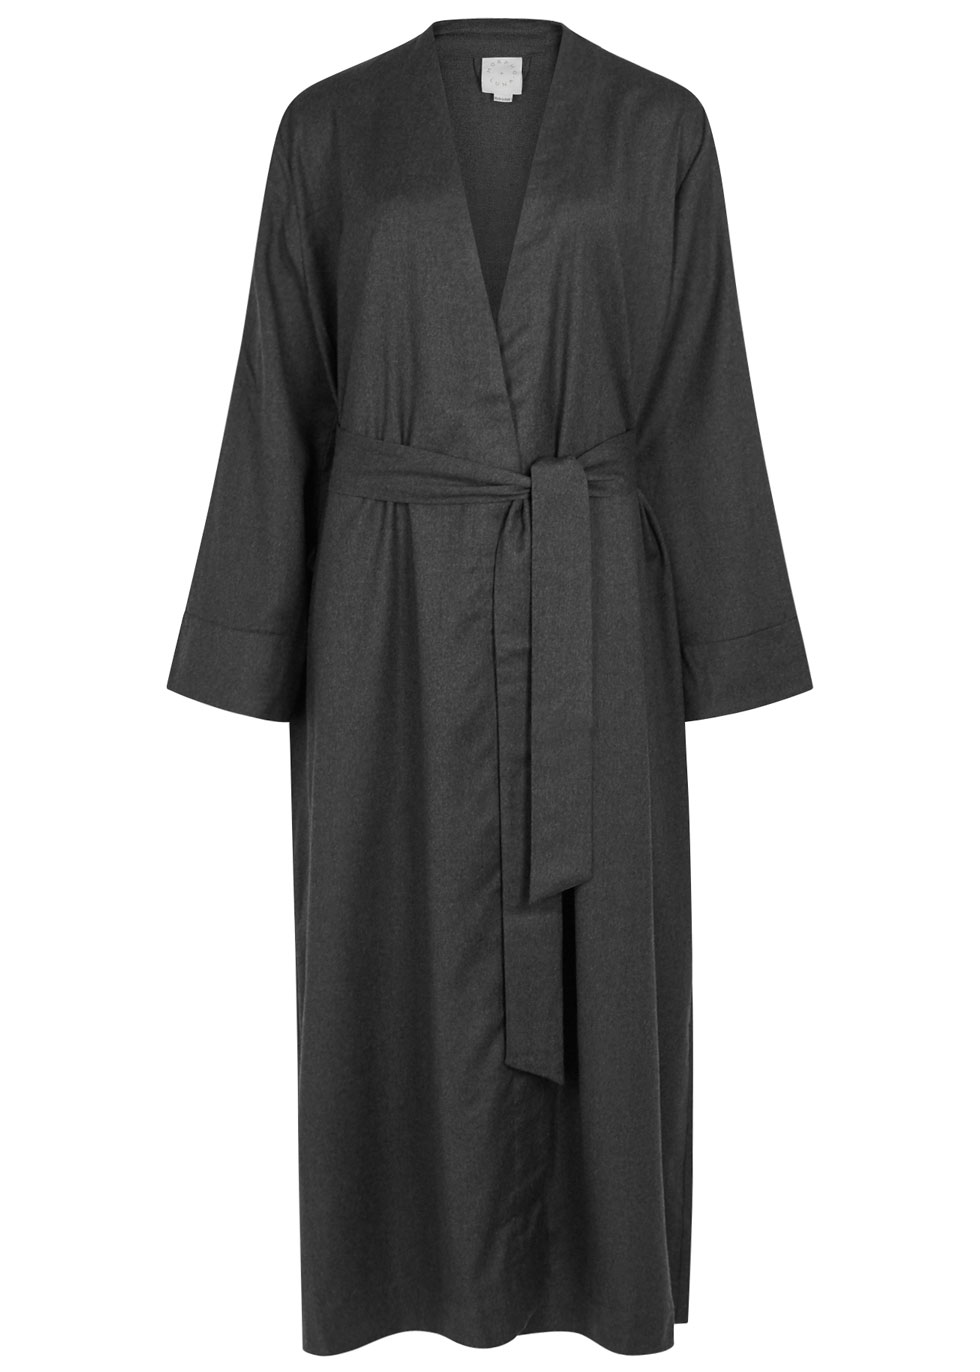 Morpho + Luna at Harvey Nichols - Luna charcoal wool flannel robe - £400